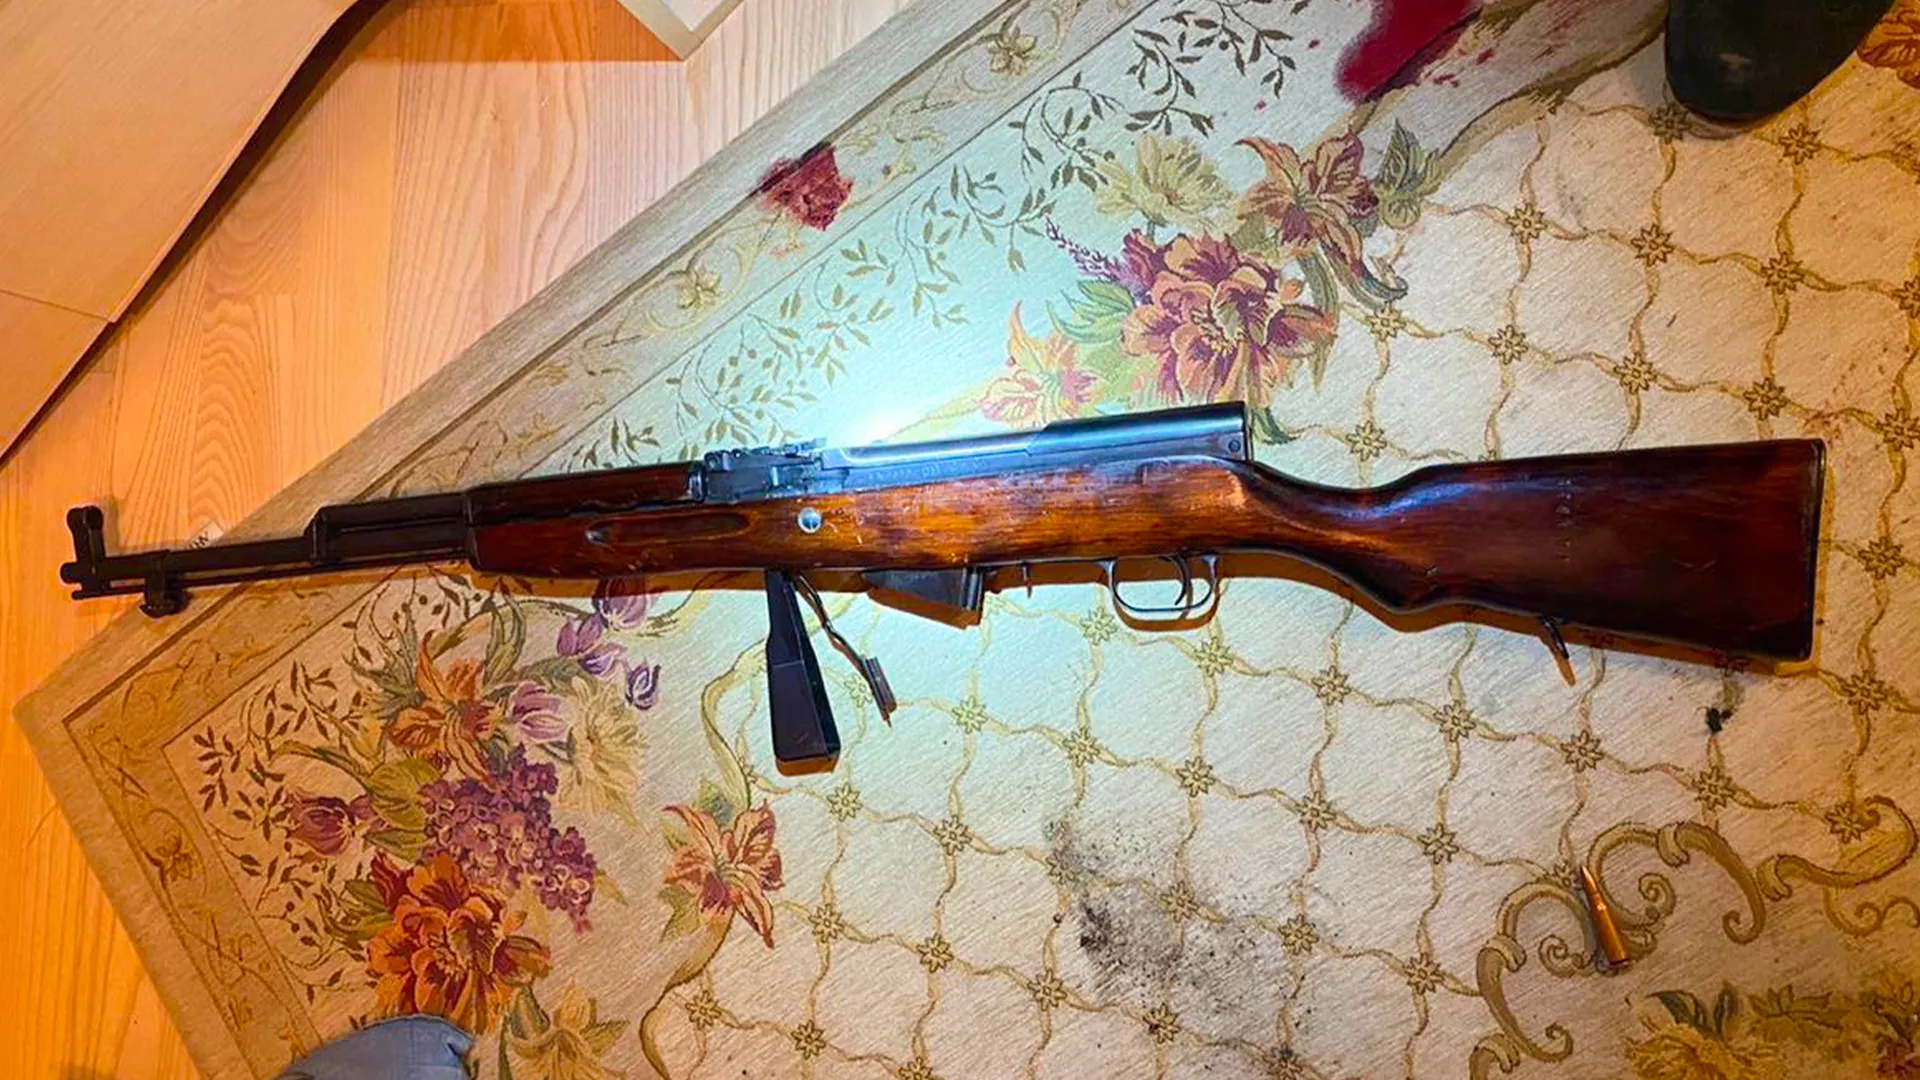 Появилось фото оружия, из которого мужчина устроил стрельбу на юго-западе Москвы